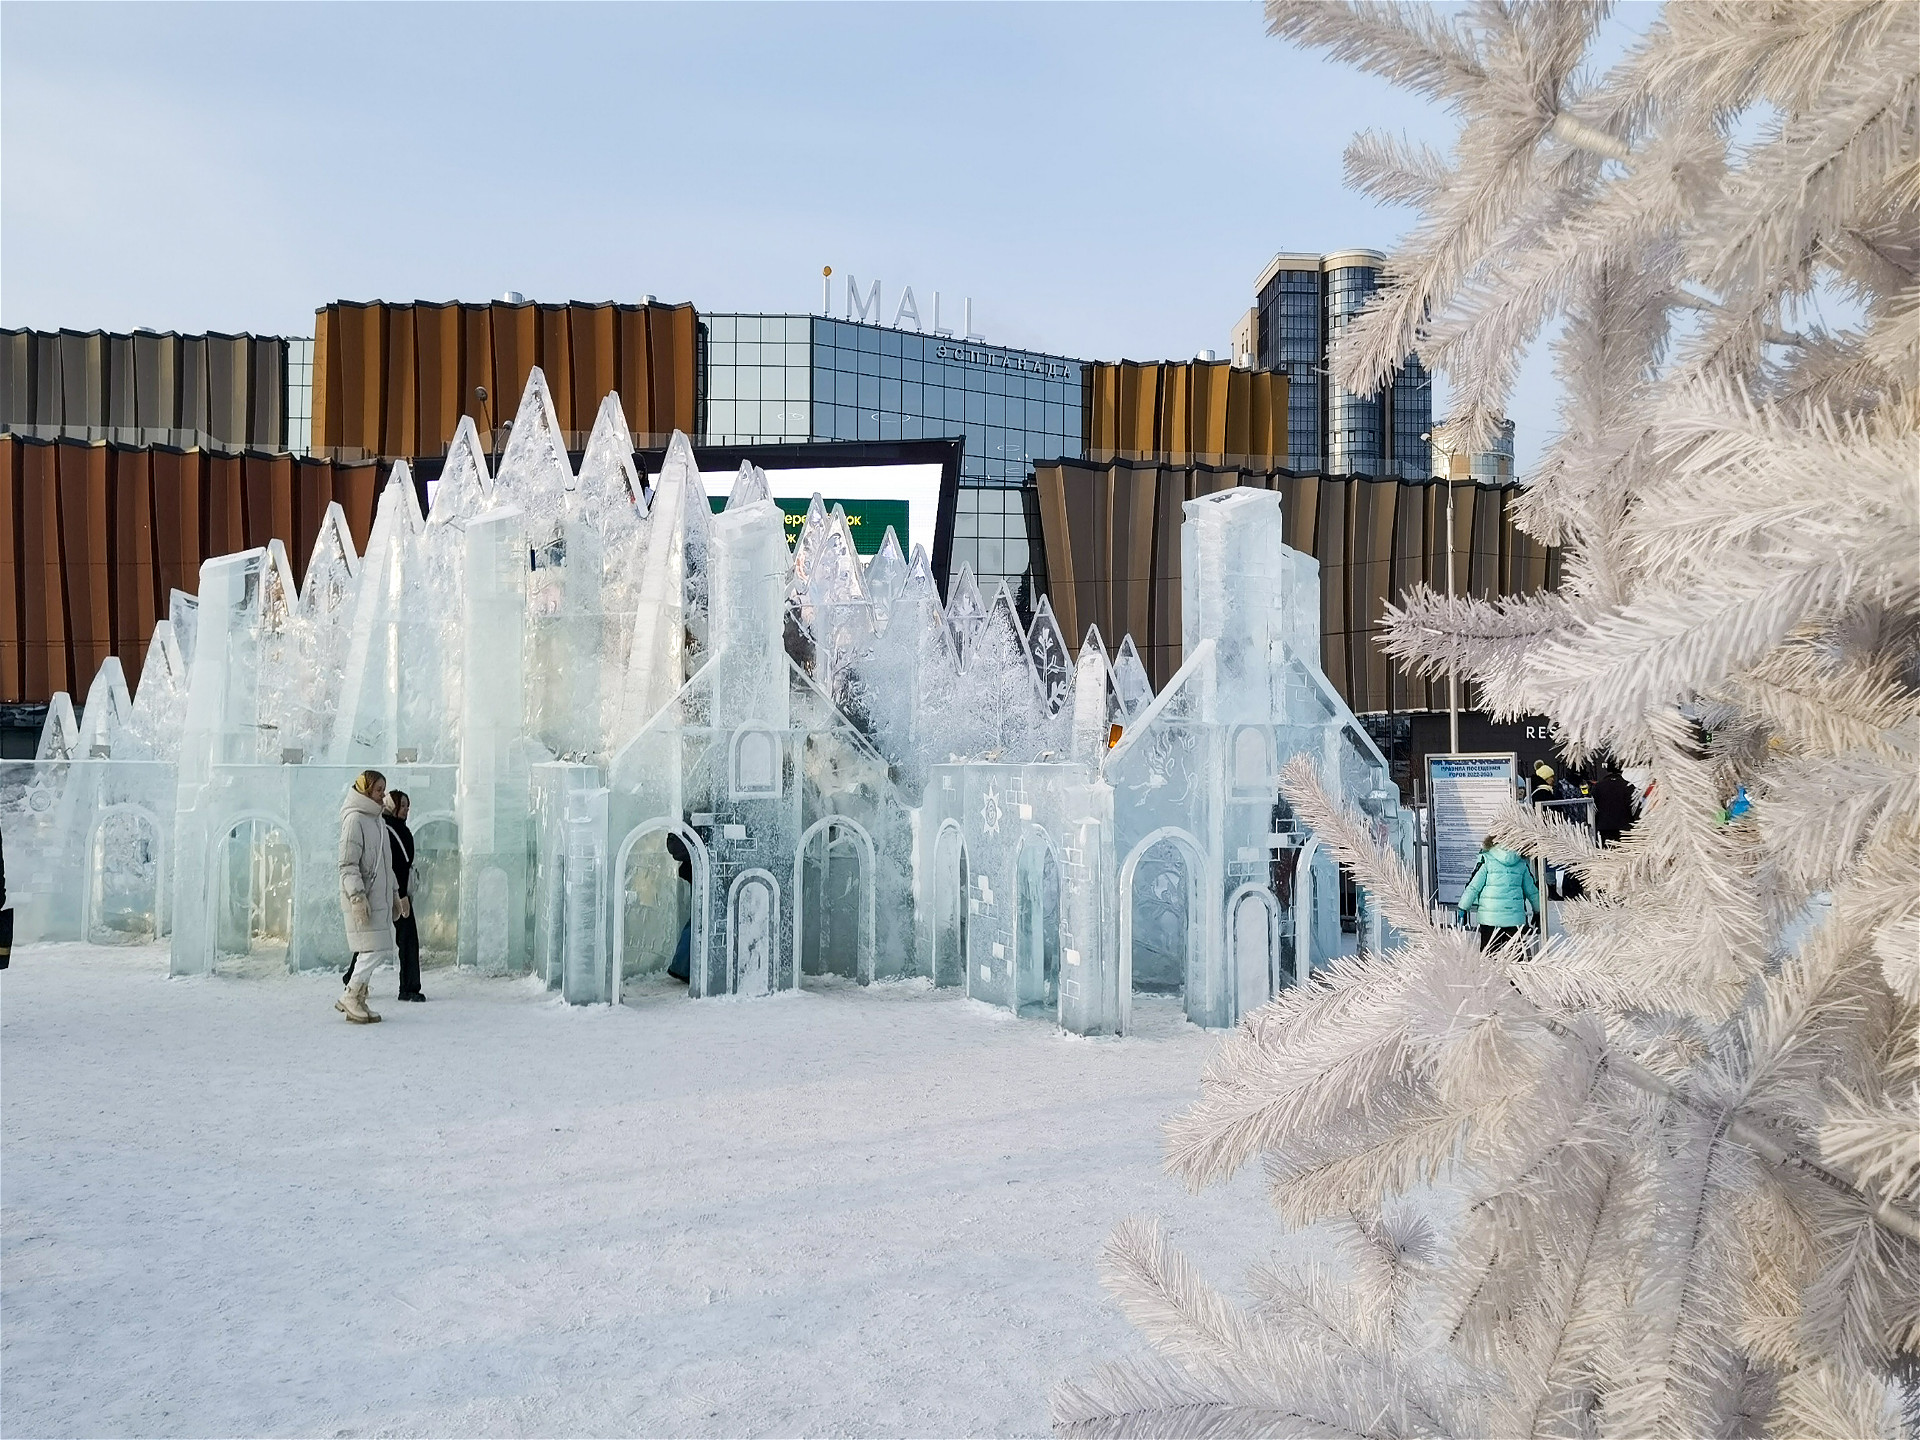 ледяные домики для детей рядом с белой елкой